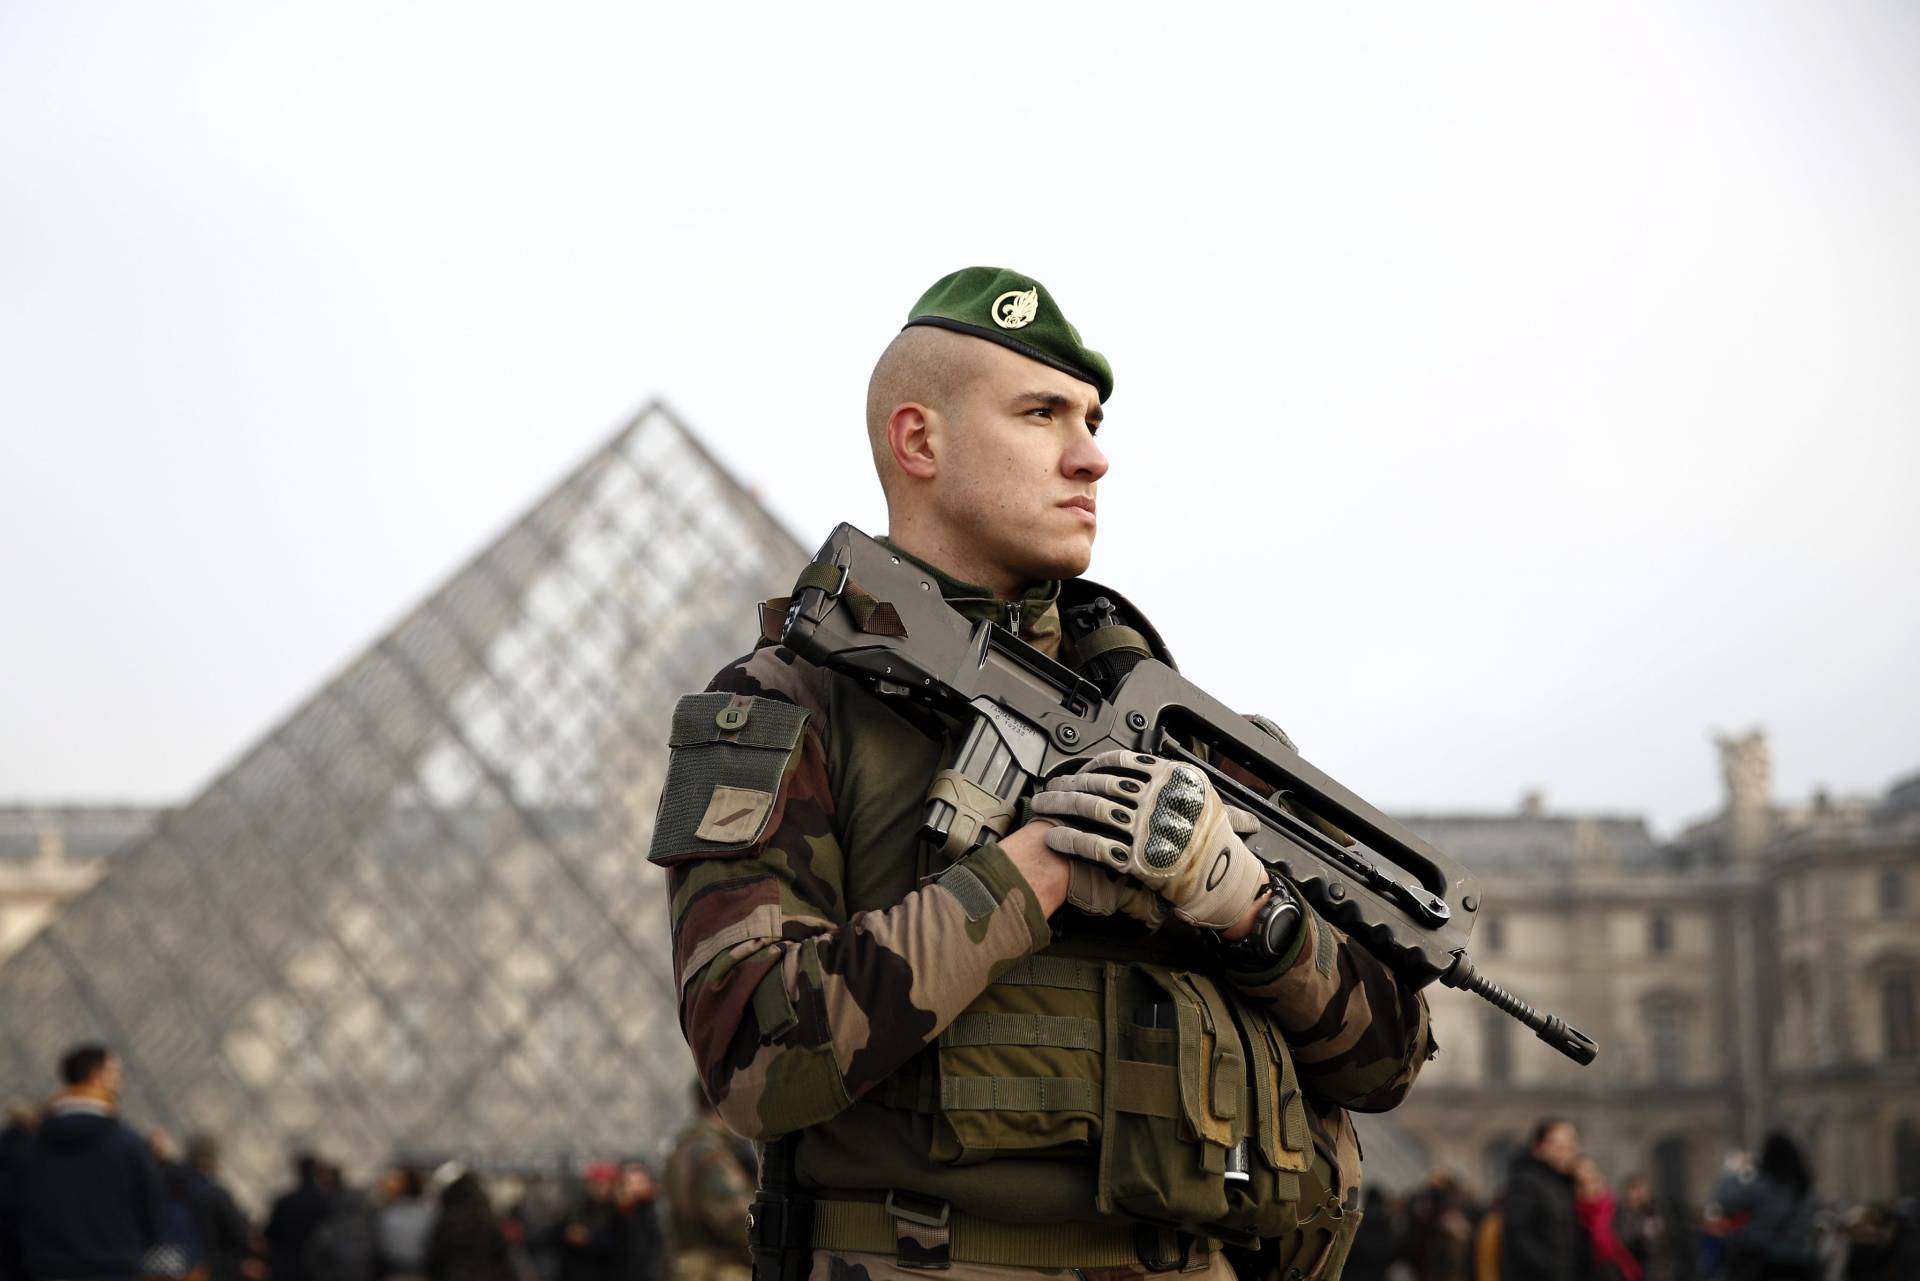 Un soldado junto al museo Louvre de París.